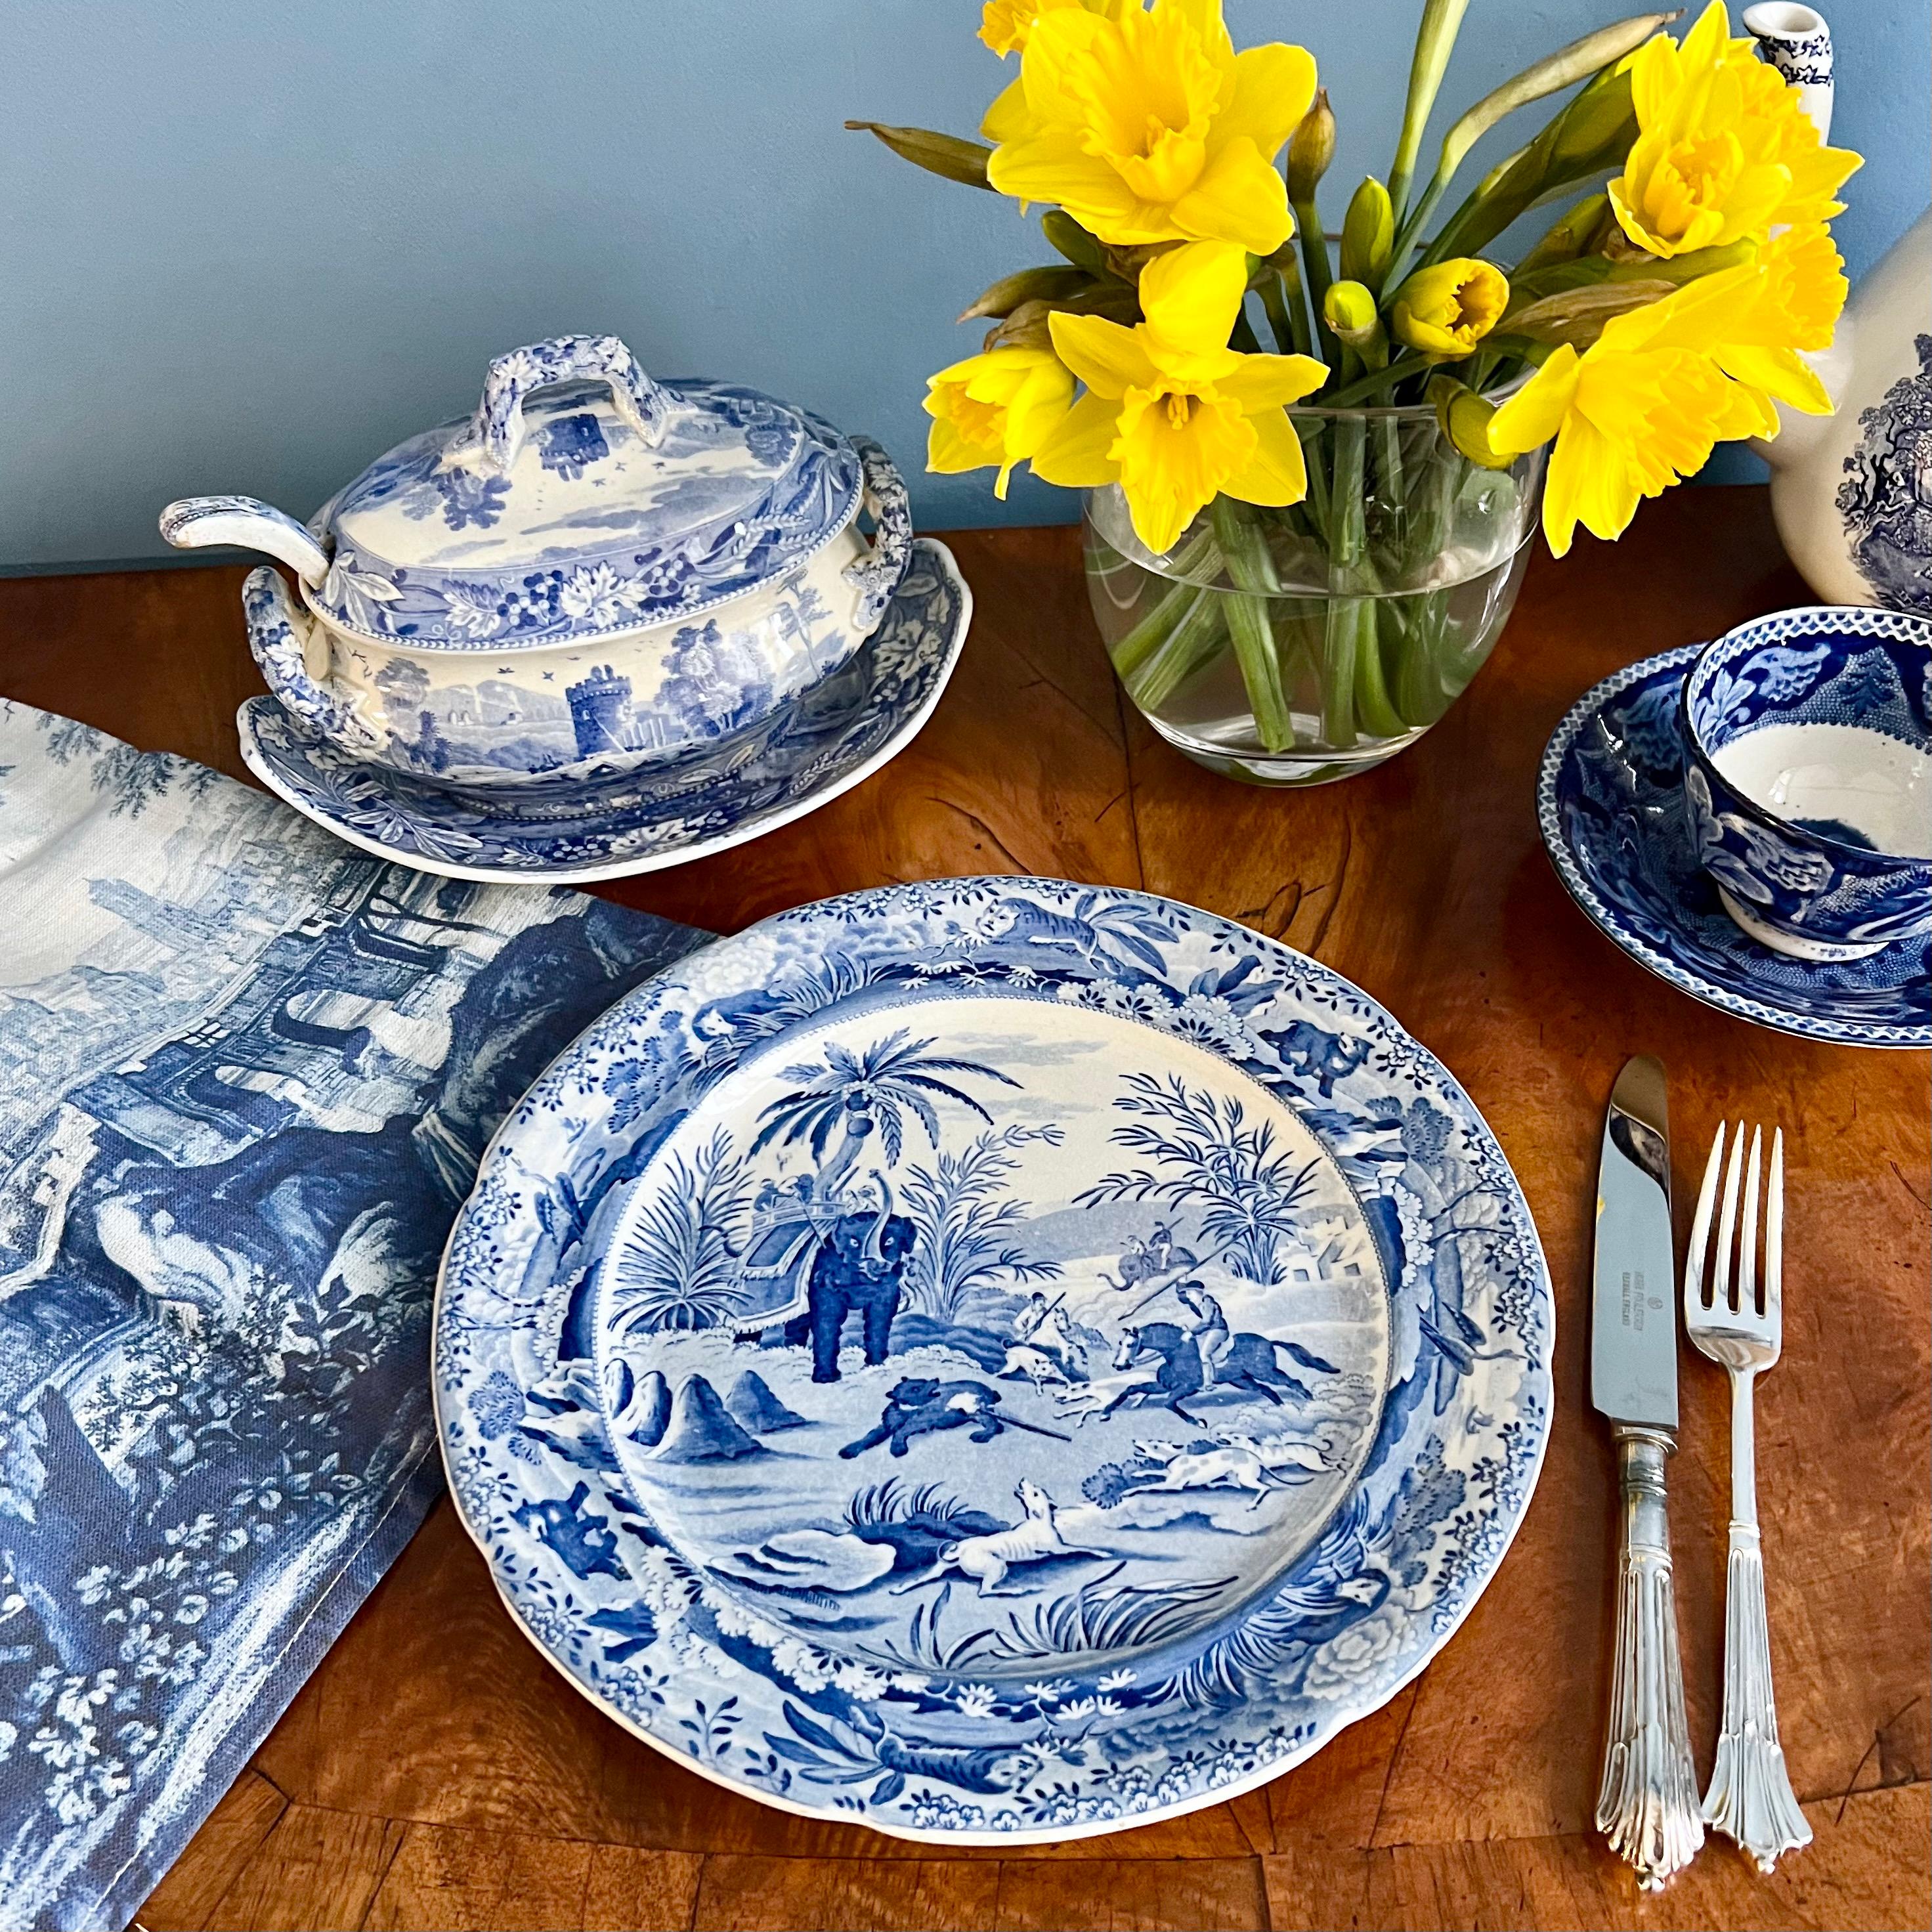 Il s'agit d'une belle assiette à dîner fabriquée vers 1850 par Edward Challinor. L'assiette est en faïence perlée et décorée d'une impression par transfert bleu et blanc qui est une copie proche de la célèbre série 